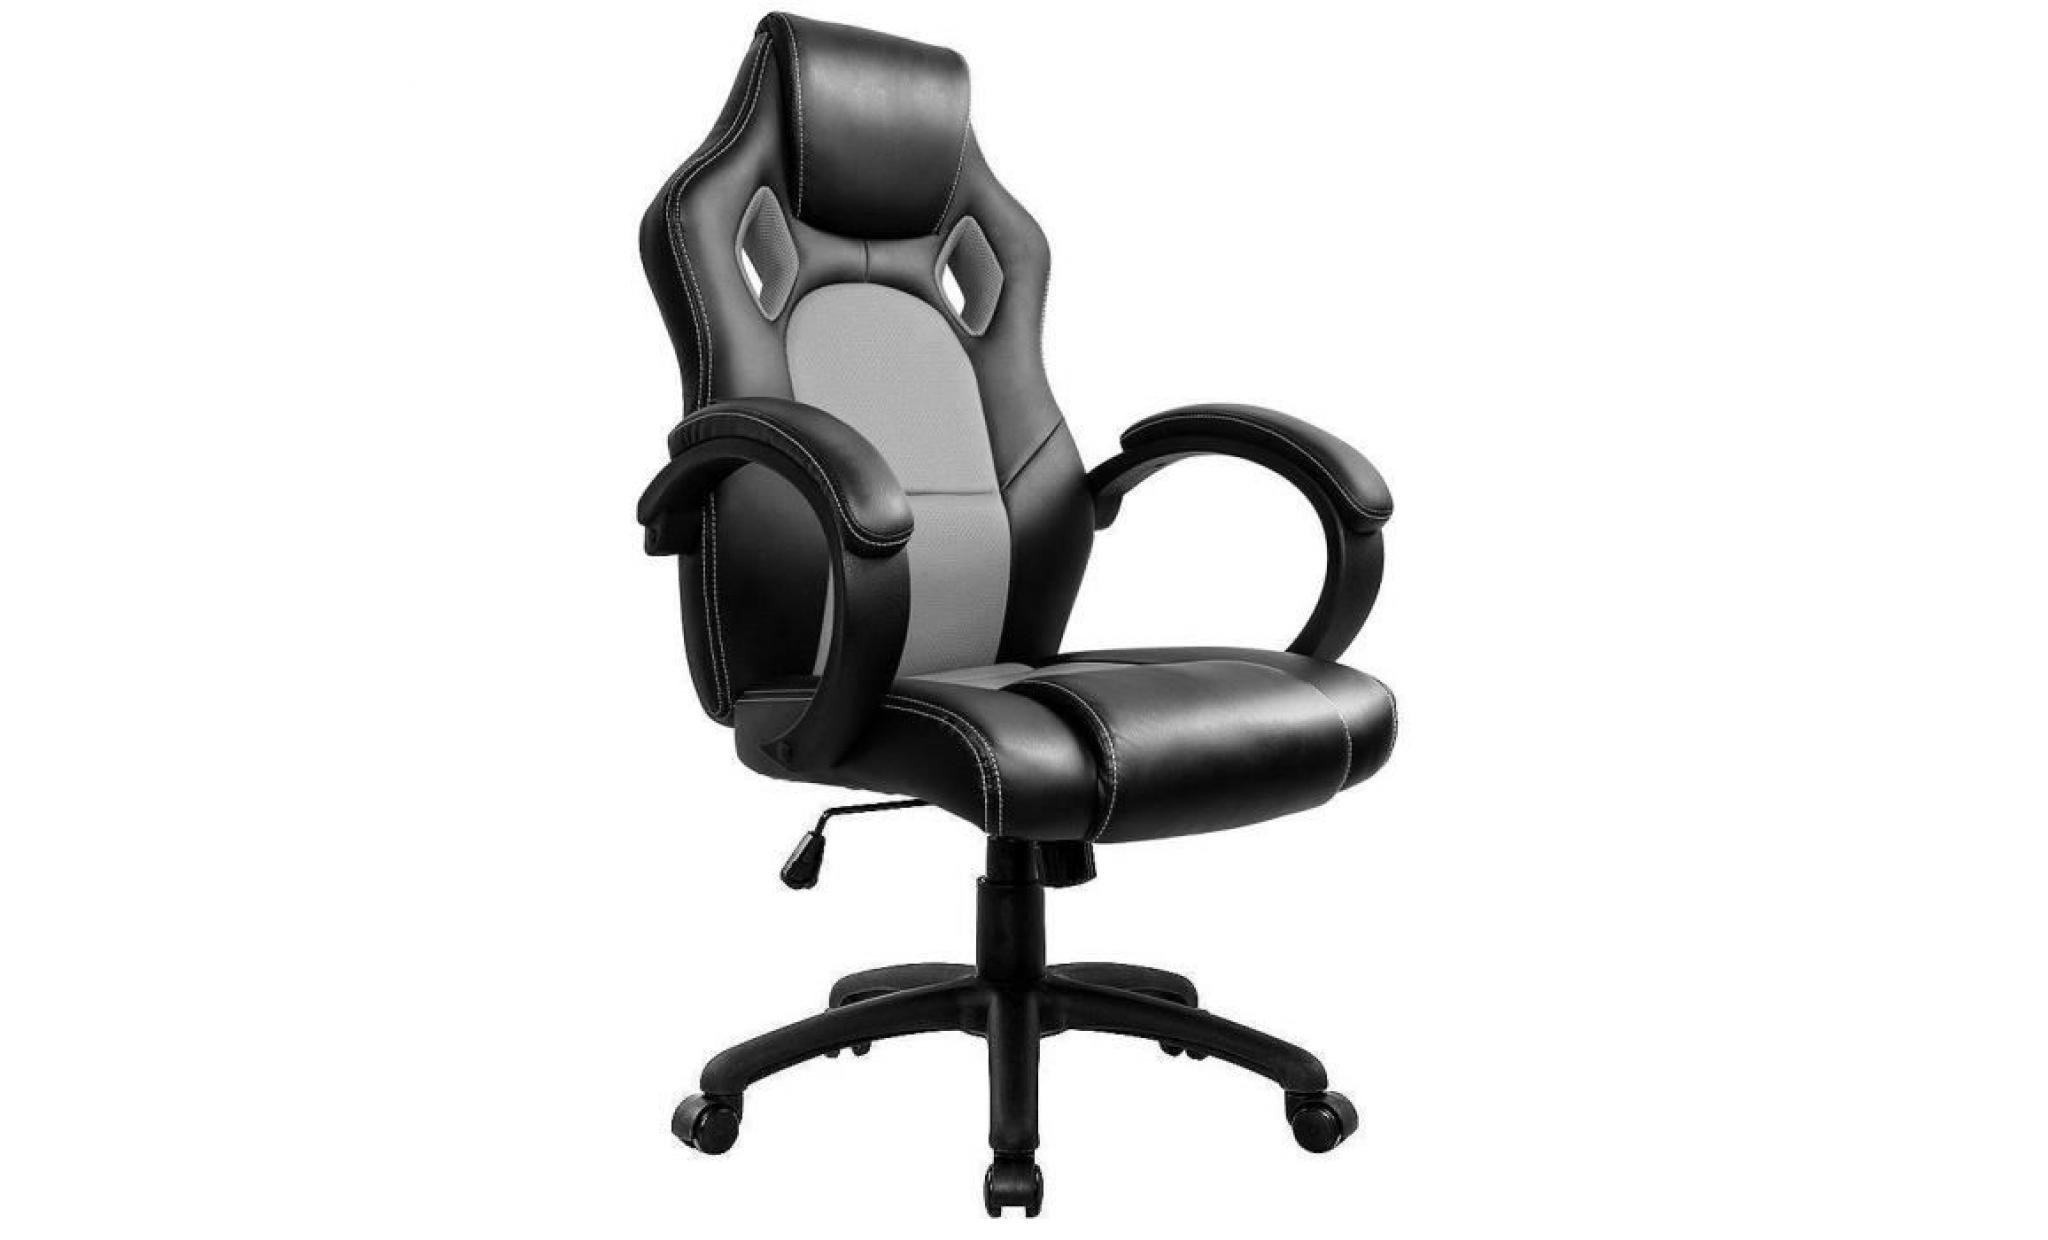 fauteuil de bureau chaise de bureau   moderne confortable ergonomique en similicuir   hauteur réglable   rouge   intimate wm heart